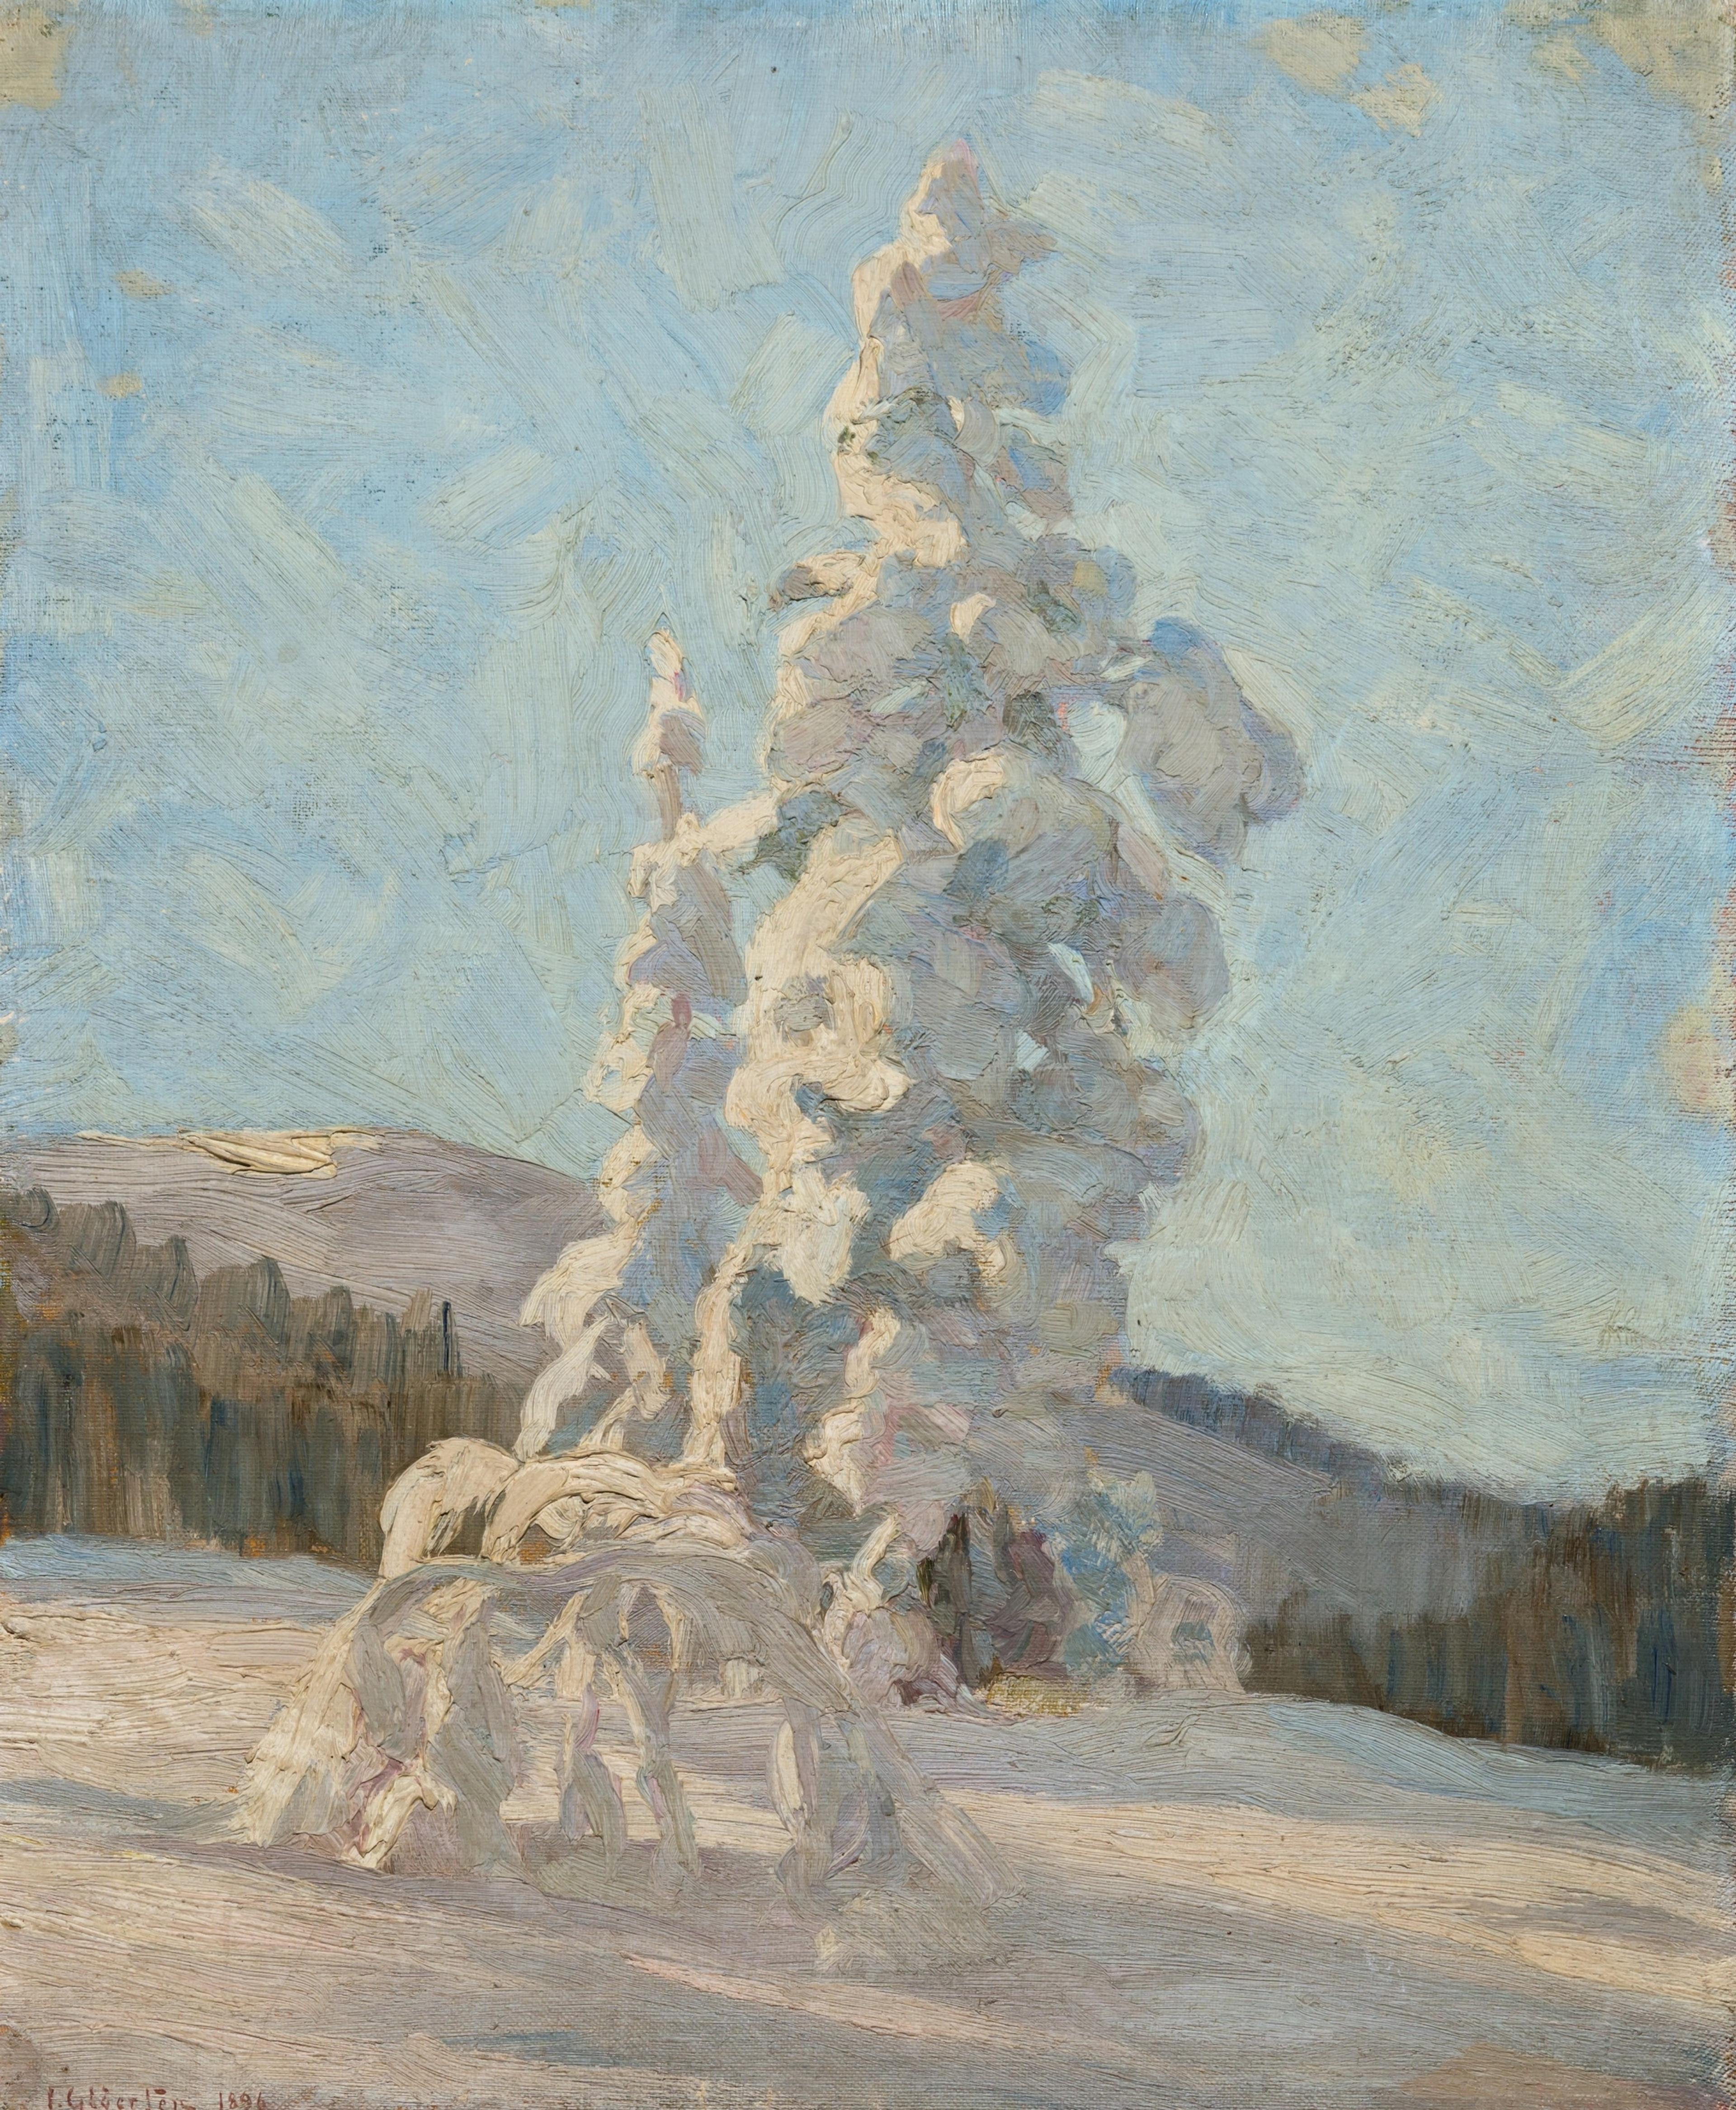 Maleri av et snødekket tre med åser i bakgrunnen, i hvite, blå og rosa fargetoner